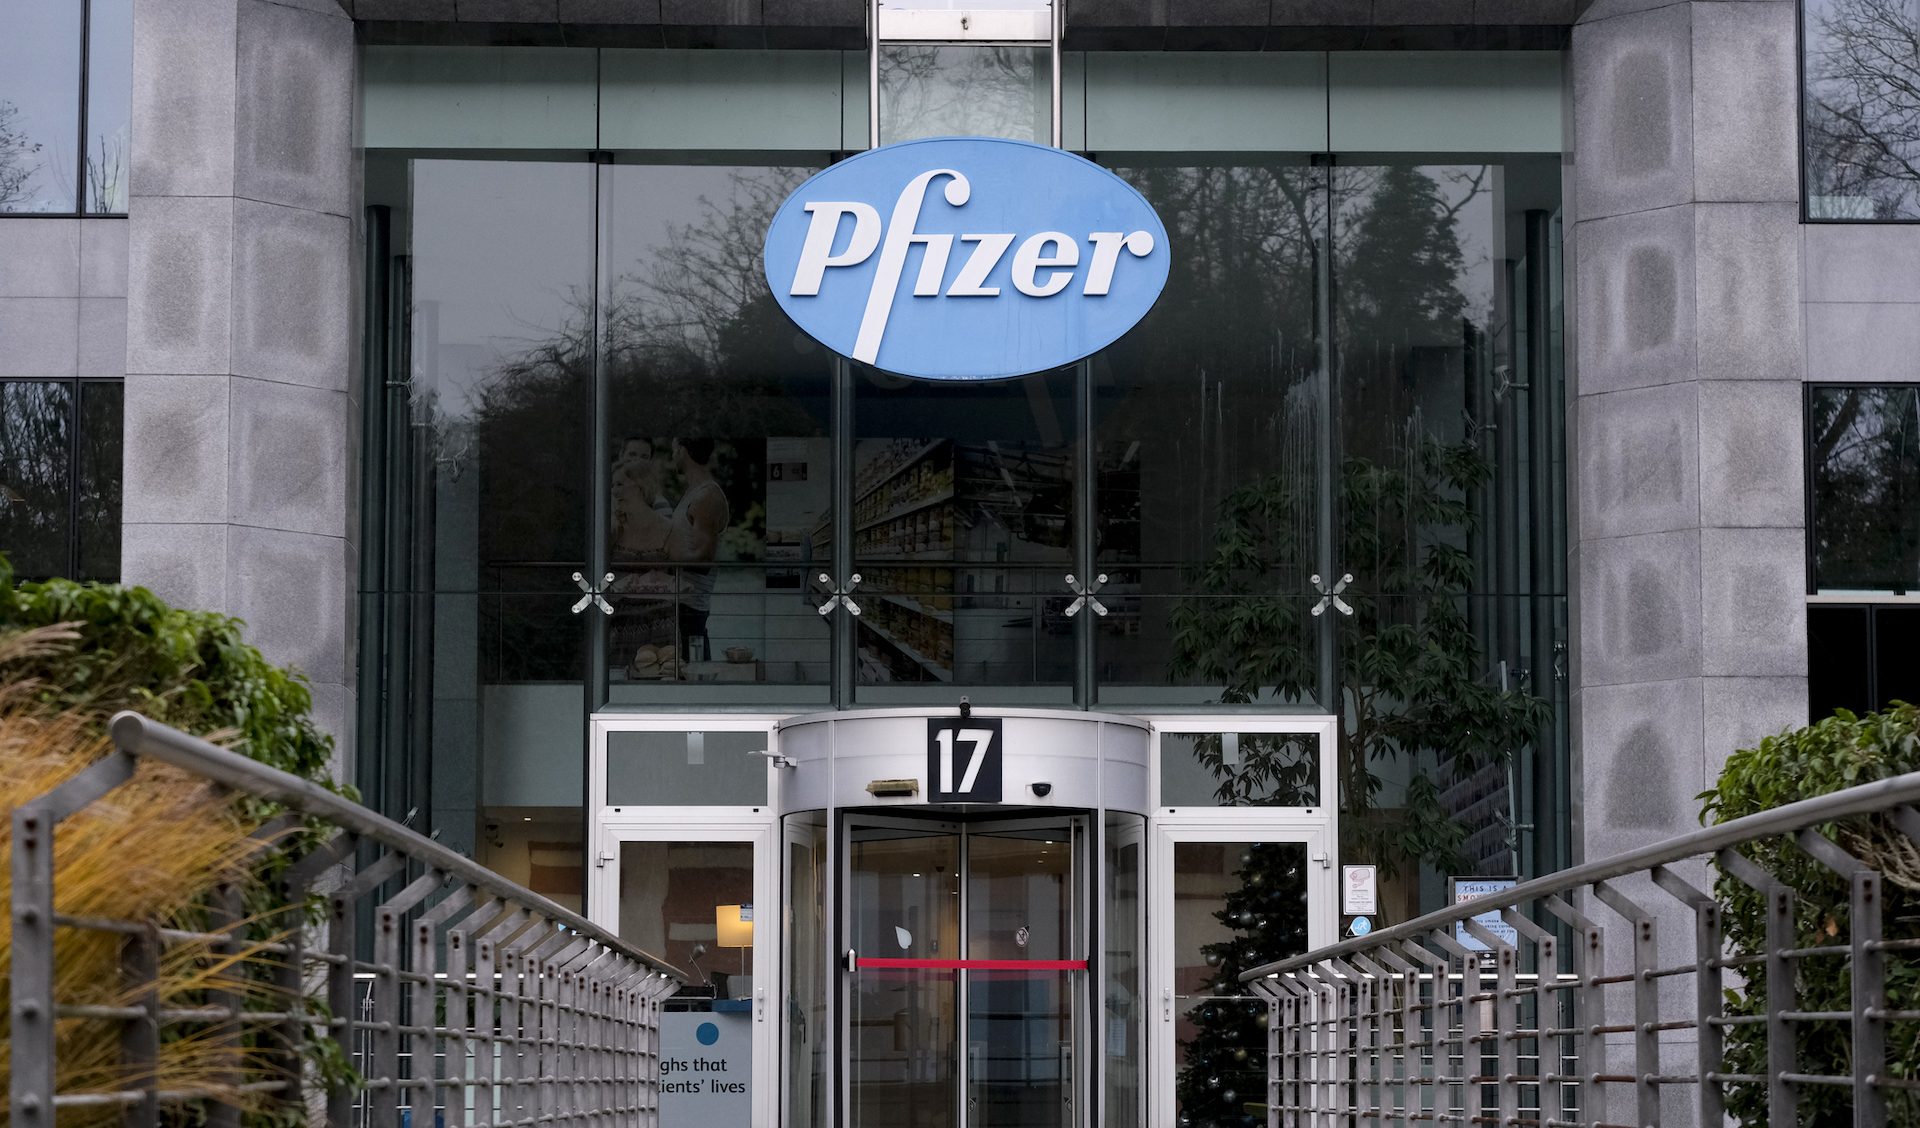 Verifica fiscale a Pfizer Italia: ipotesi di 1,2 miliardi di utili  trasferiti all'estero per sottrarli alle tasse